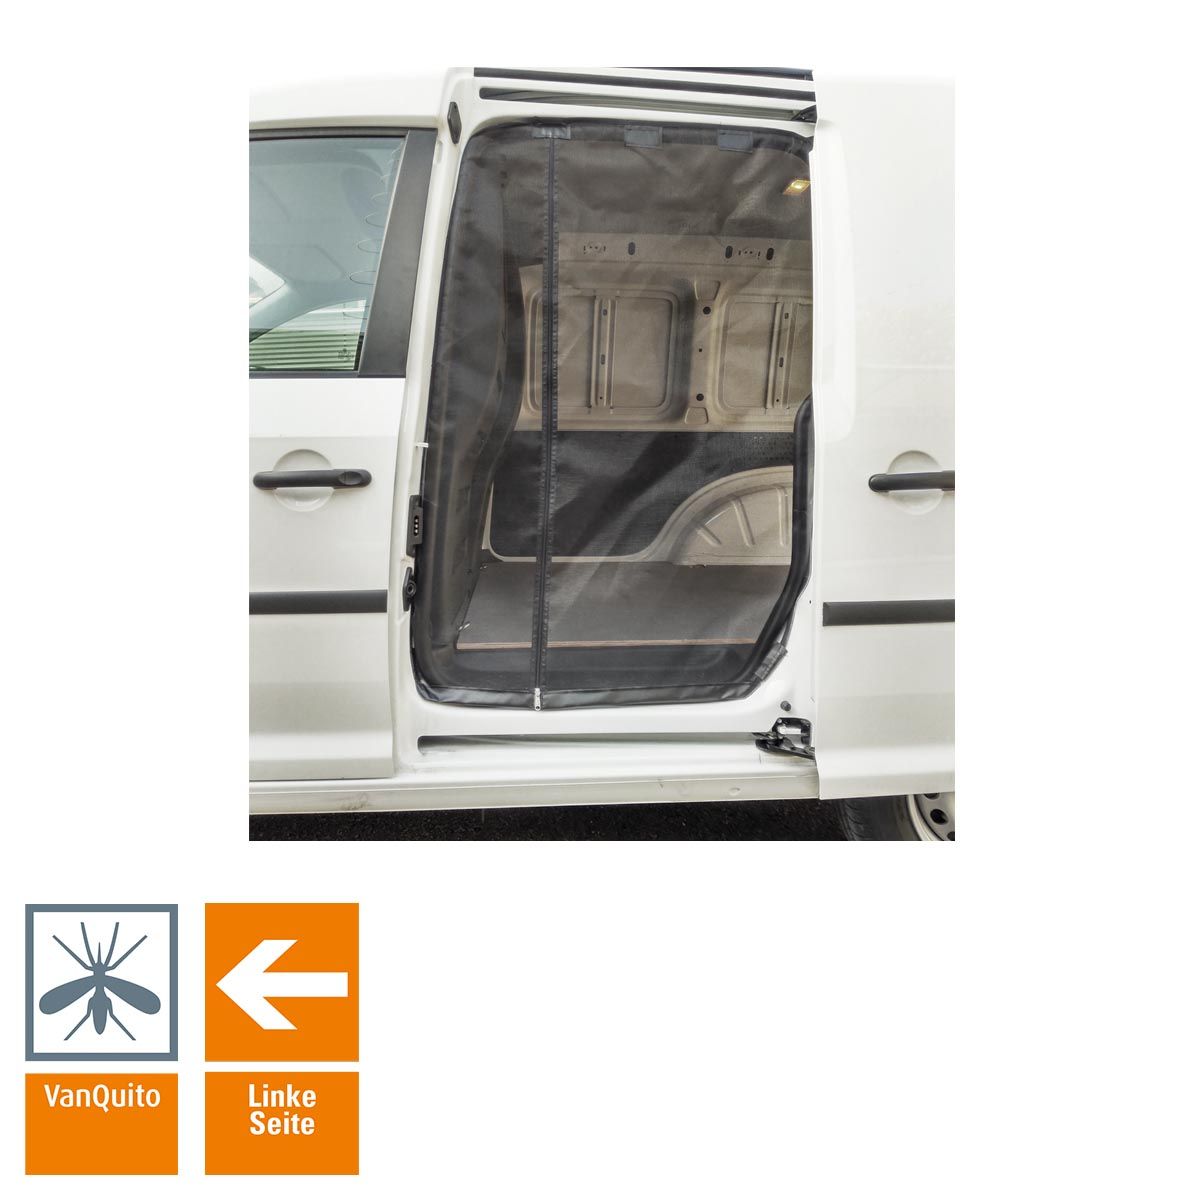 Schiebetürenmoskitonetz "Reißverschluss" für VW Caddy 4 (ab 2014) / Insektenschutz VanQuito - Fahrerseite Standard